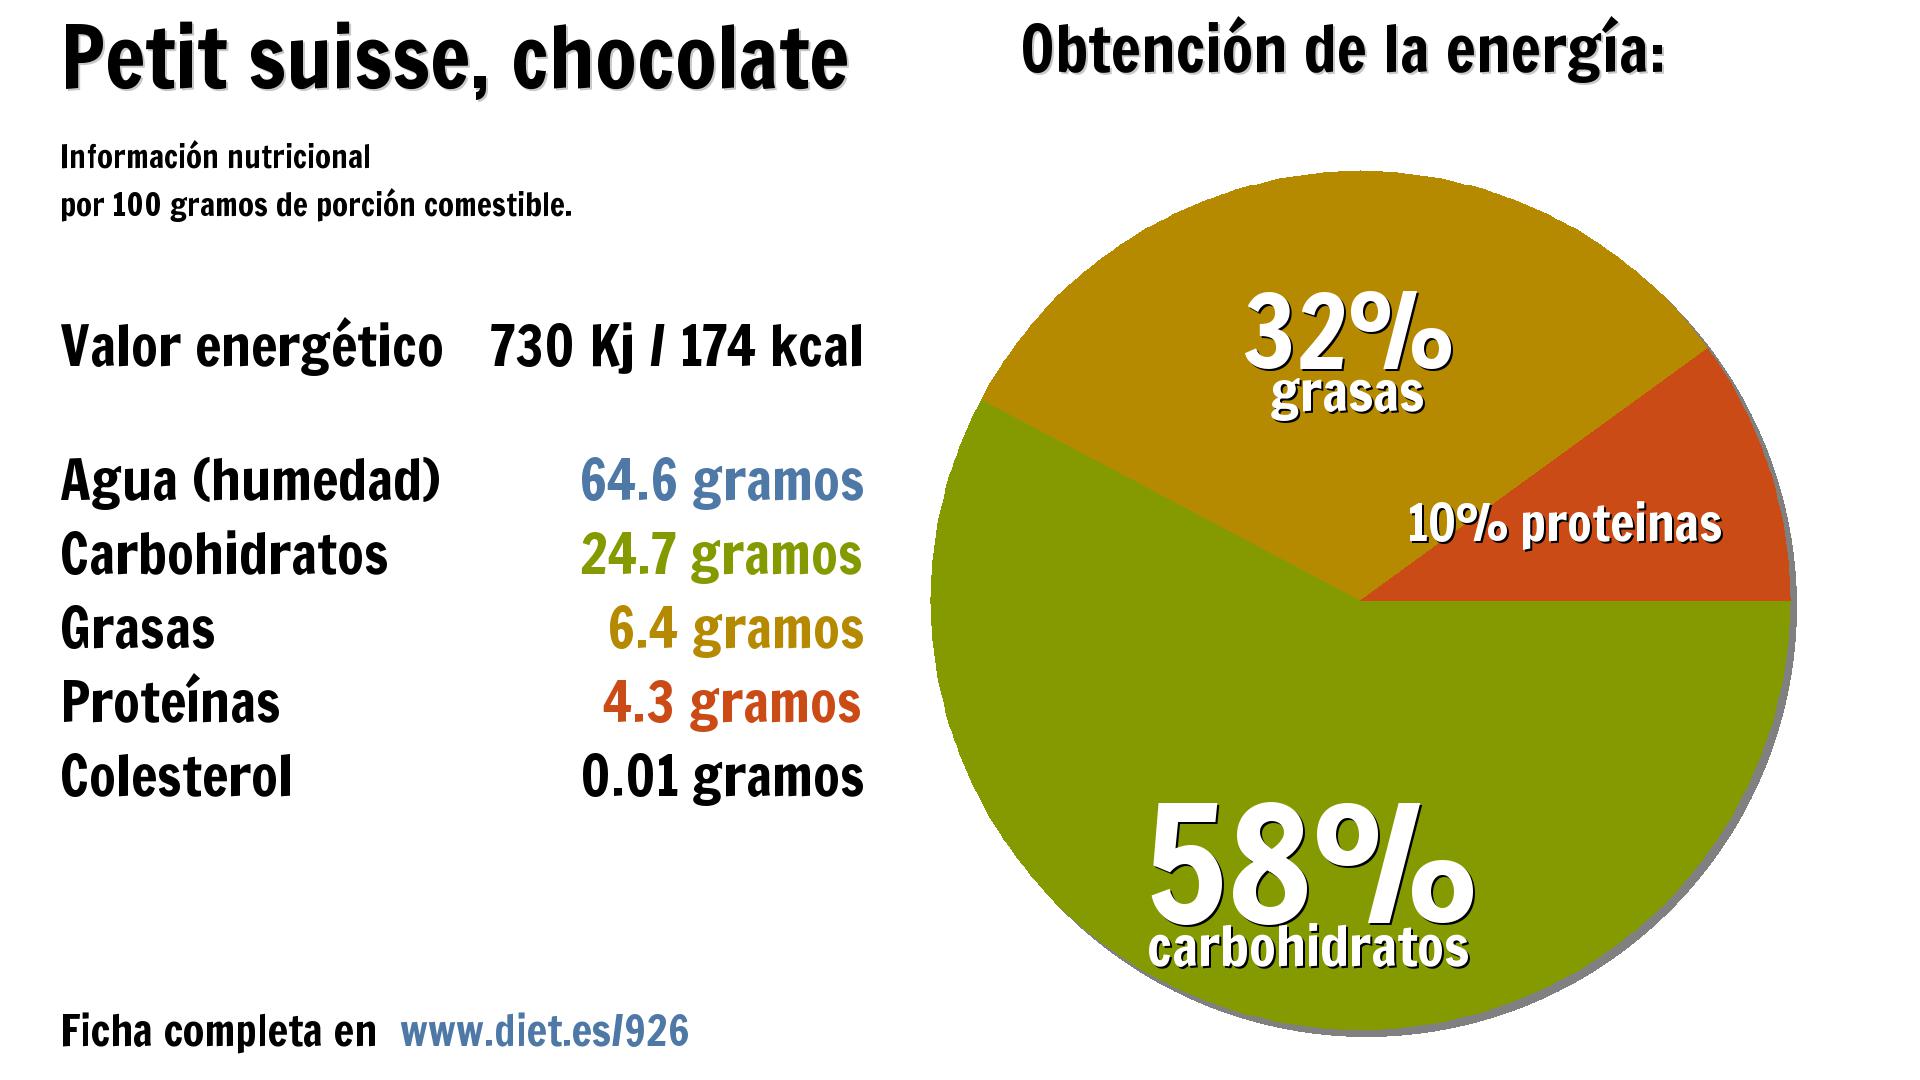 Petit suisse, chocolate: energía 730 Kj, agua 65 g., carbohidratos 25 g., grasas 6 g. y proteínas 4 g.